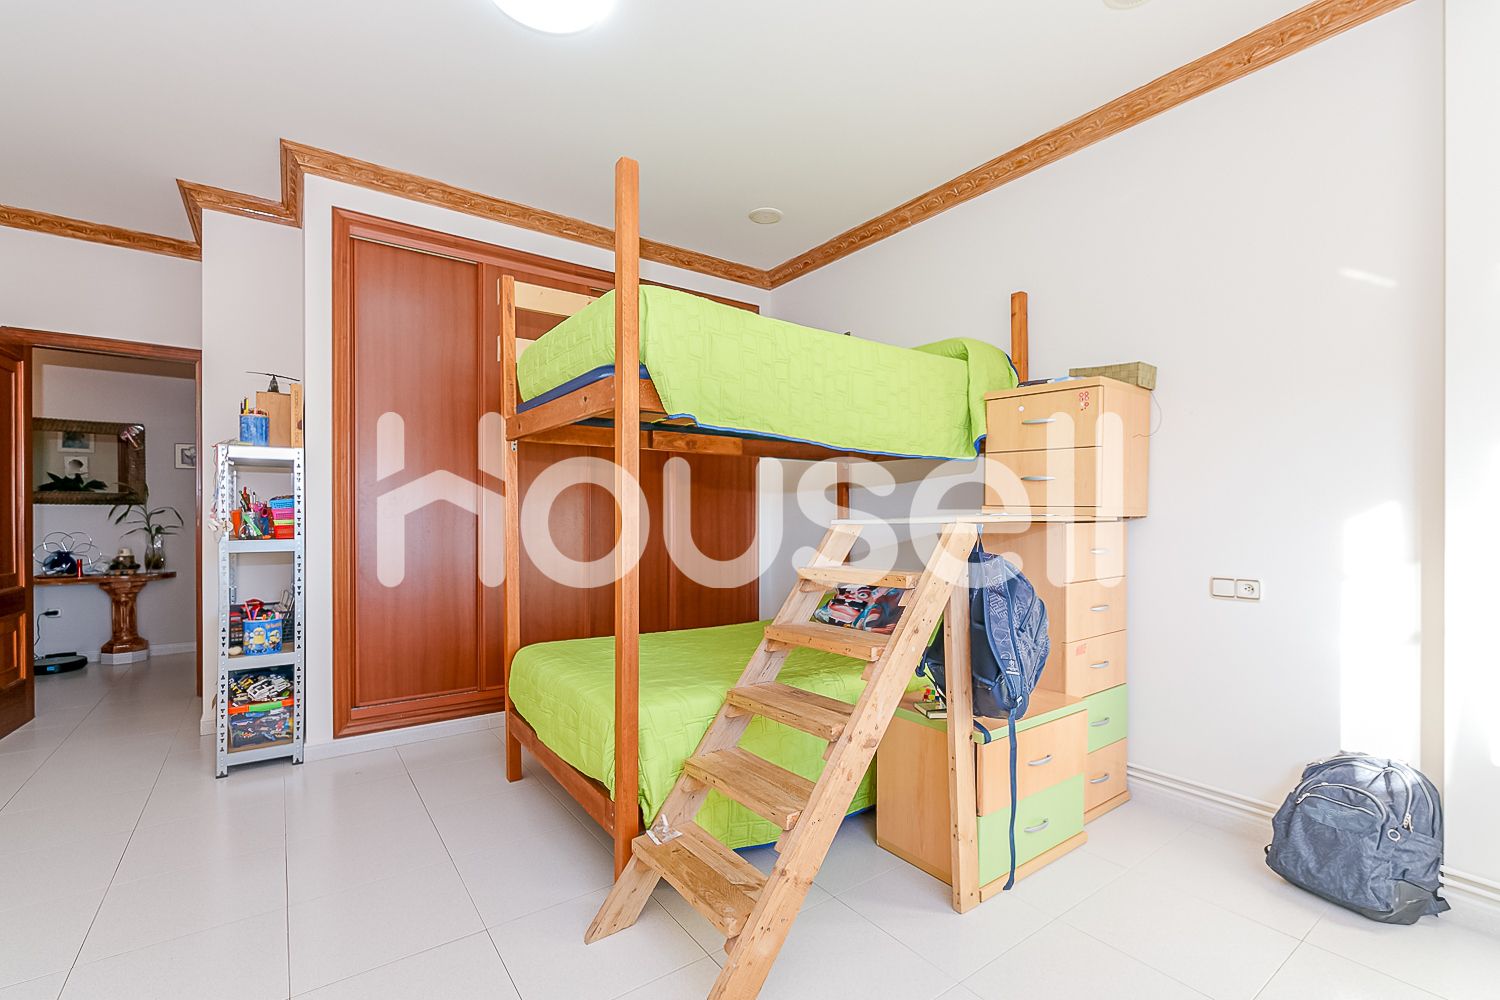 Cama blanca bonita para niños de 5 a 8 años, gran espacio de  almacenamiento, muebles de dormitorio de madera maciza, litera moderna